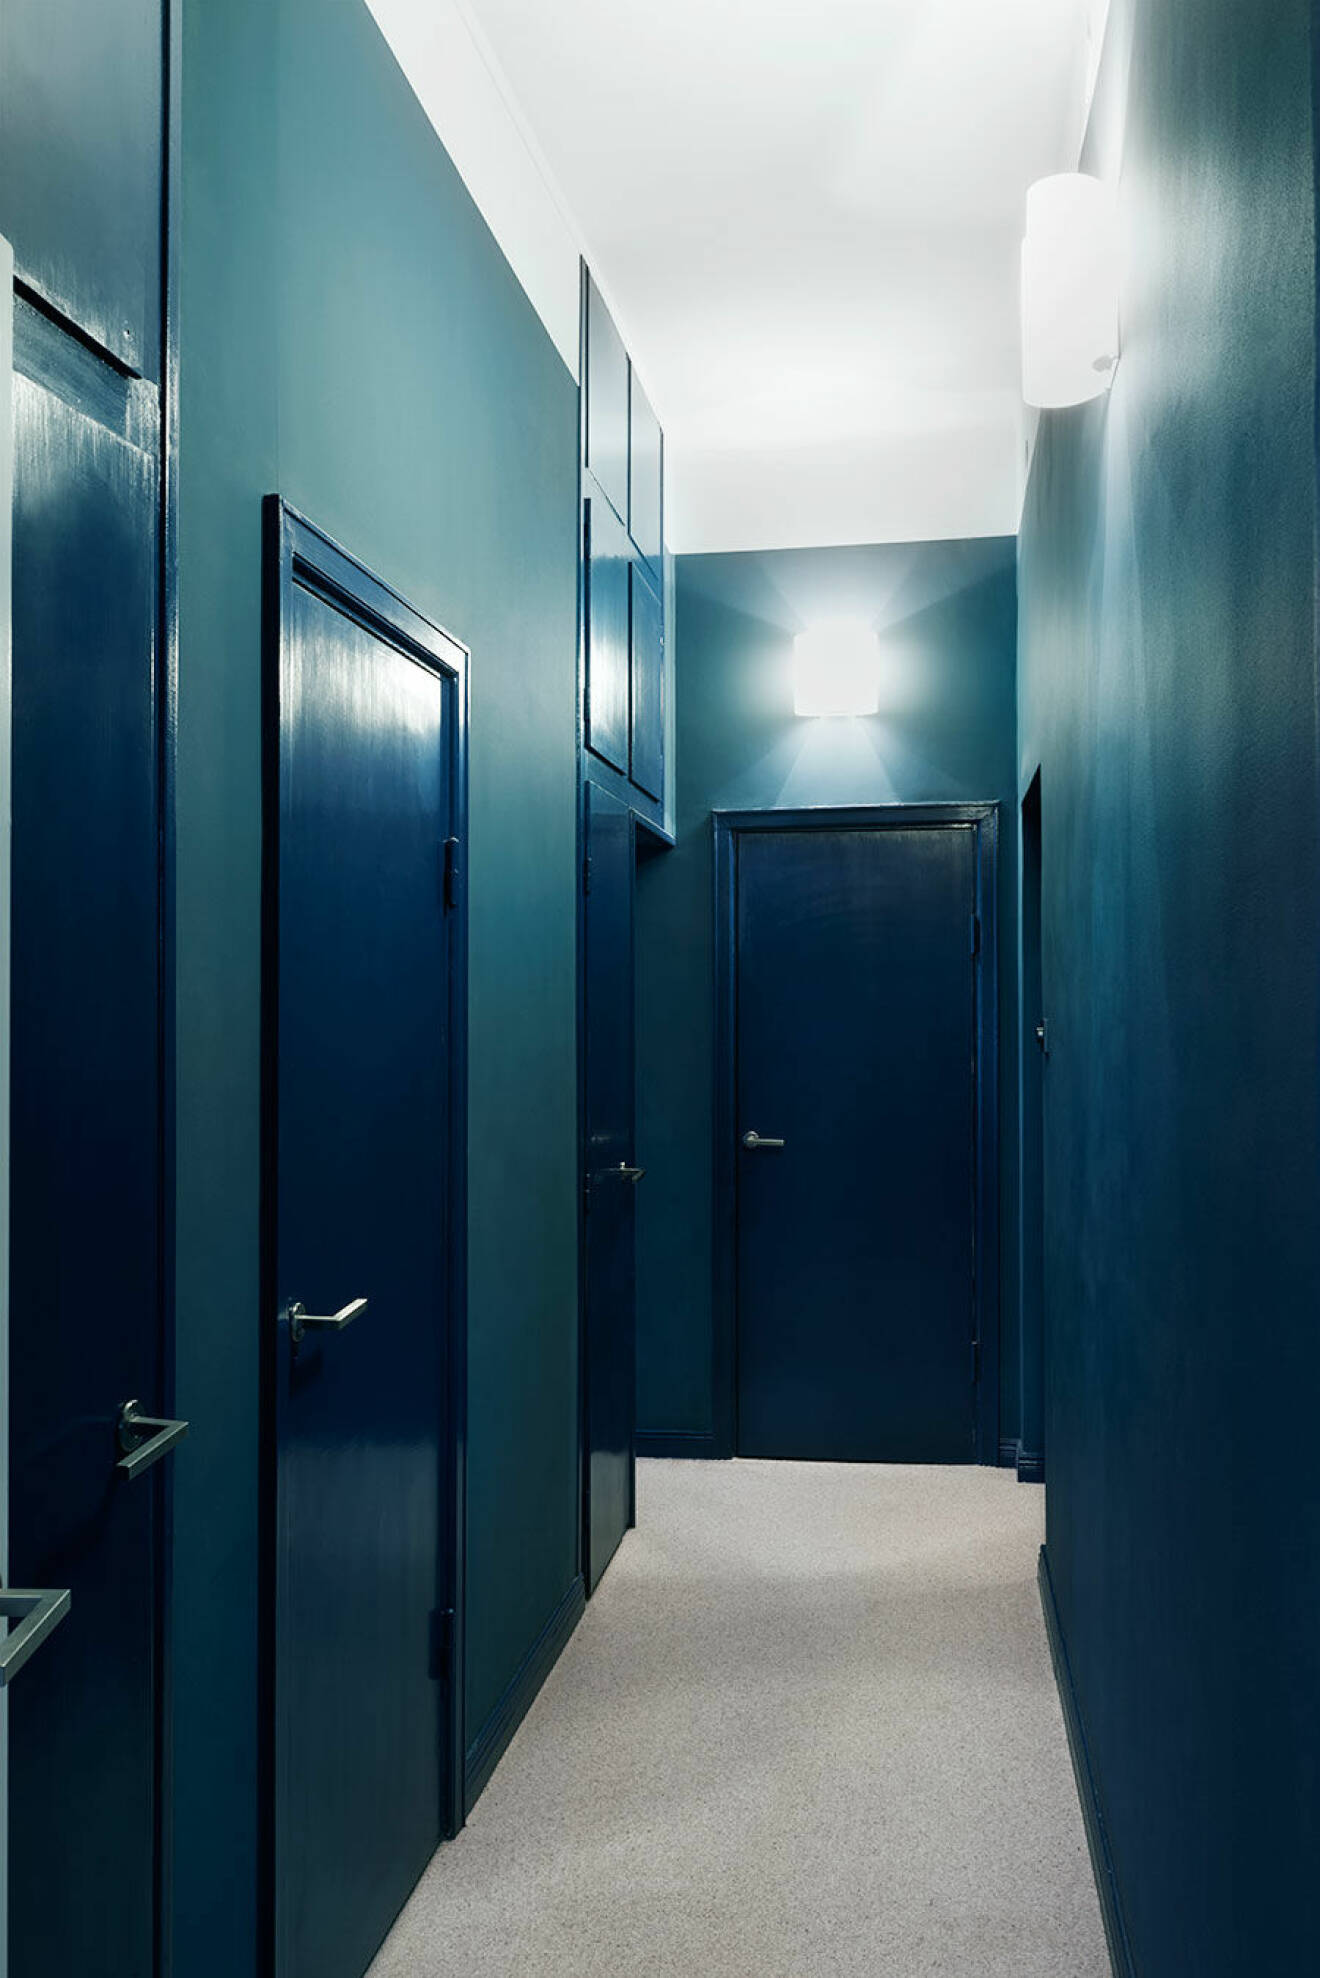 Korridoren med klädkammaren i ena änden och de tre sovrummen i fil längs med ytterväggen. Den avskilda privata känslan förstärks av den omboande heltäckningsmattan och färgvalen. Väggarna är målade i en helmatt blå nyans som står i effektfull kontrast mot dörrar och listers högblanka finish. ”Jag ville egentligen ha ännu mer färg”, säger Clara. 